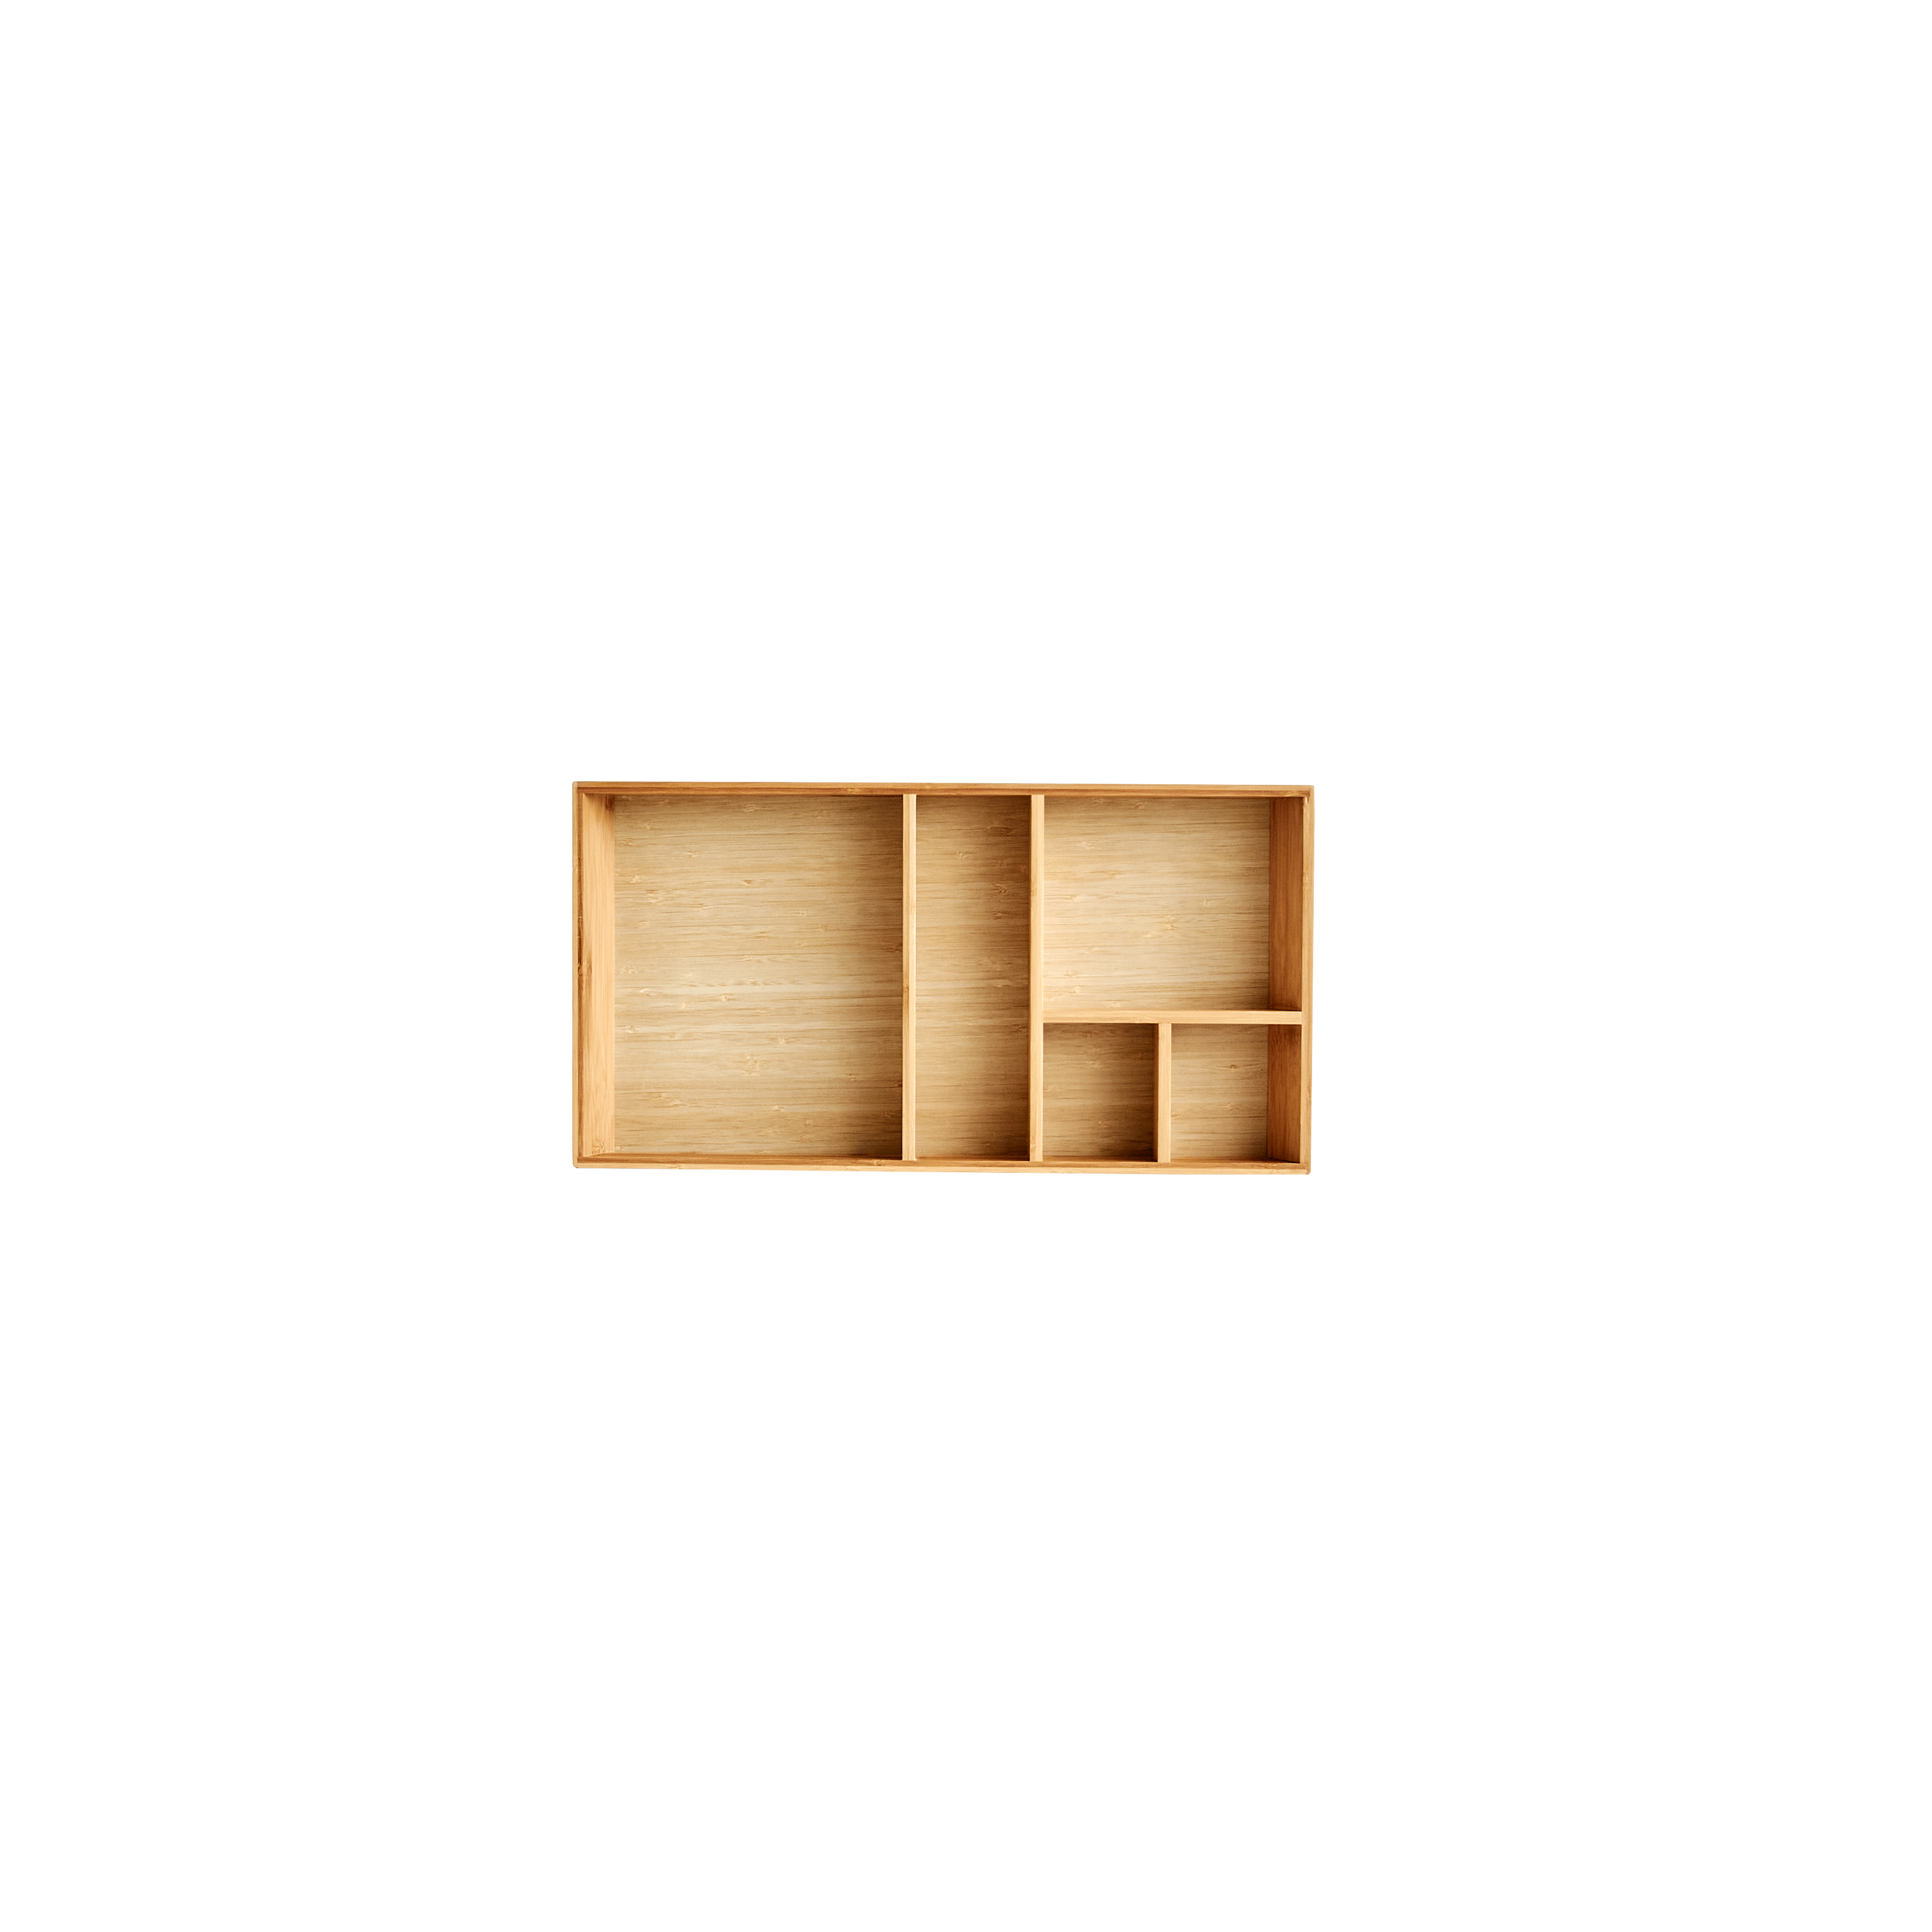 Garniture 60 x 30 cm. Bambou